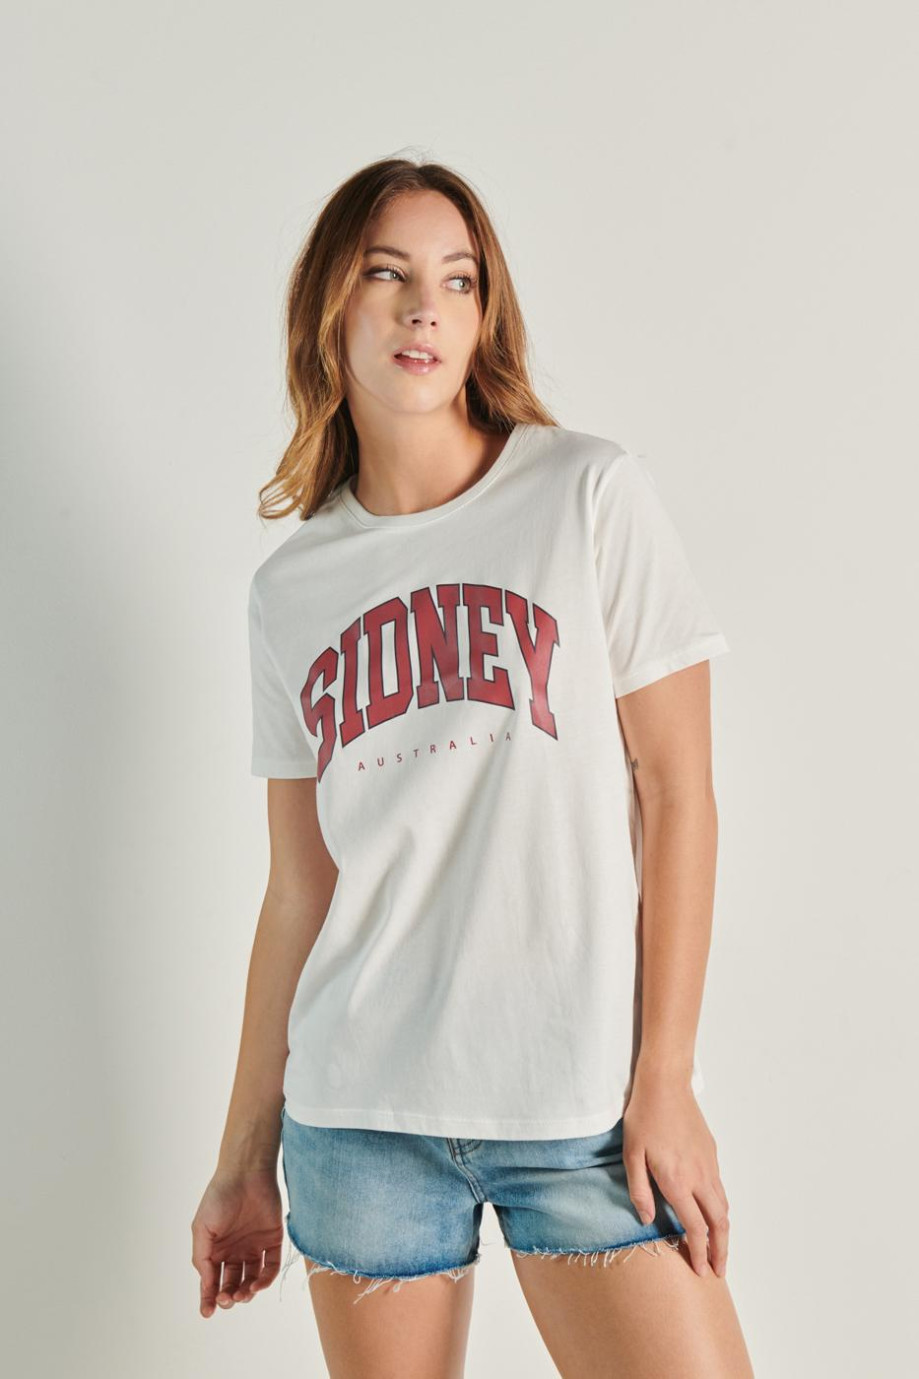 Camiseta cuello redondo unicolor con diseño college de Sídney